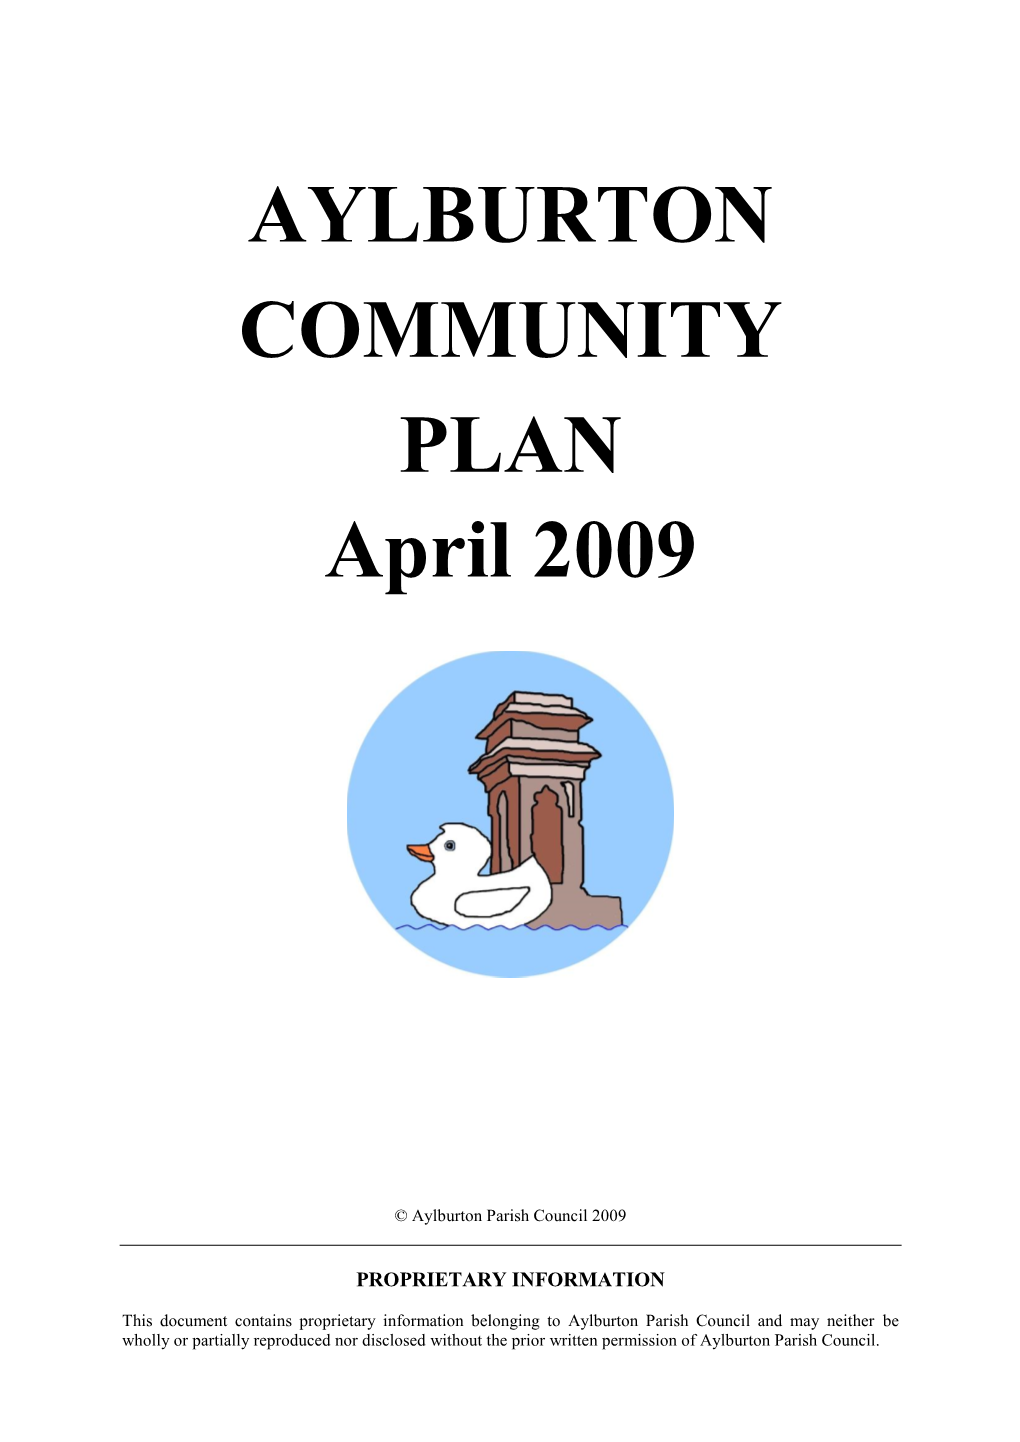 Aylburton Community Plan 2009